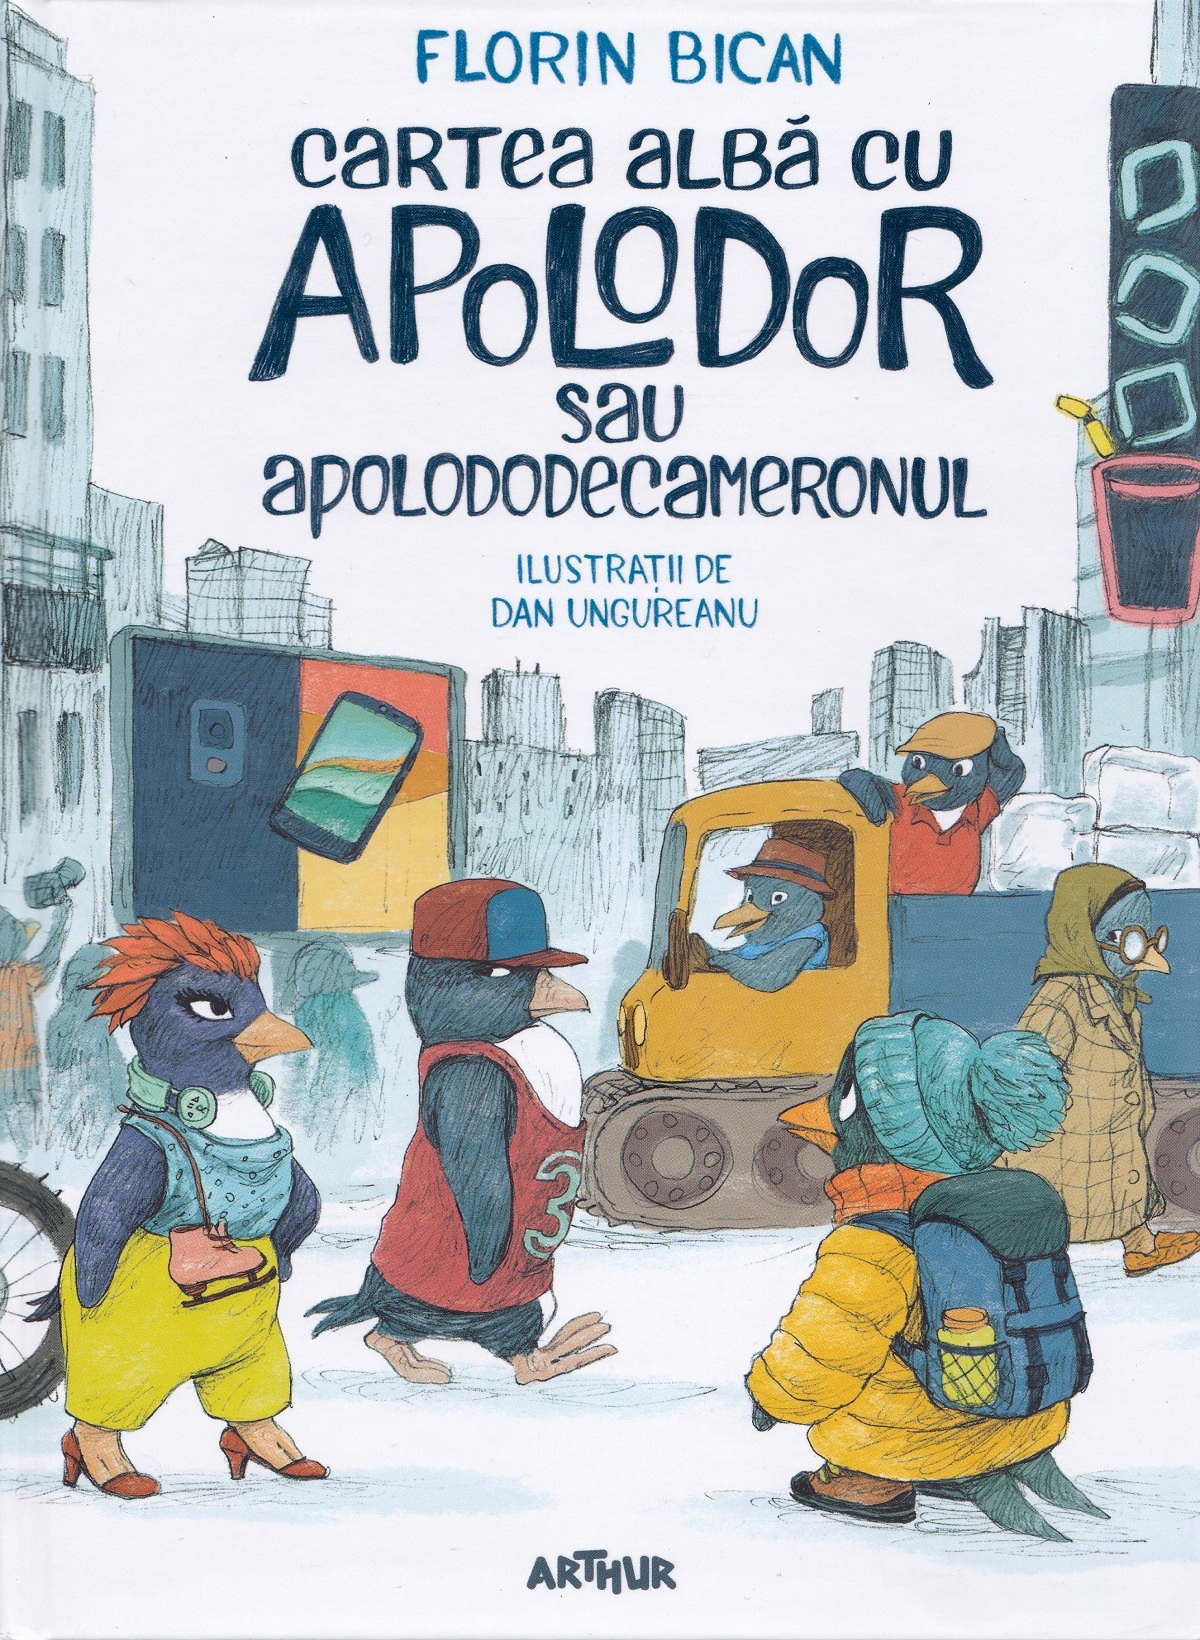 Cartea alba cu Apolodor sau Apolododecameronul - Florin Bican, Dan Ungureanu